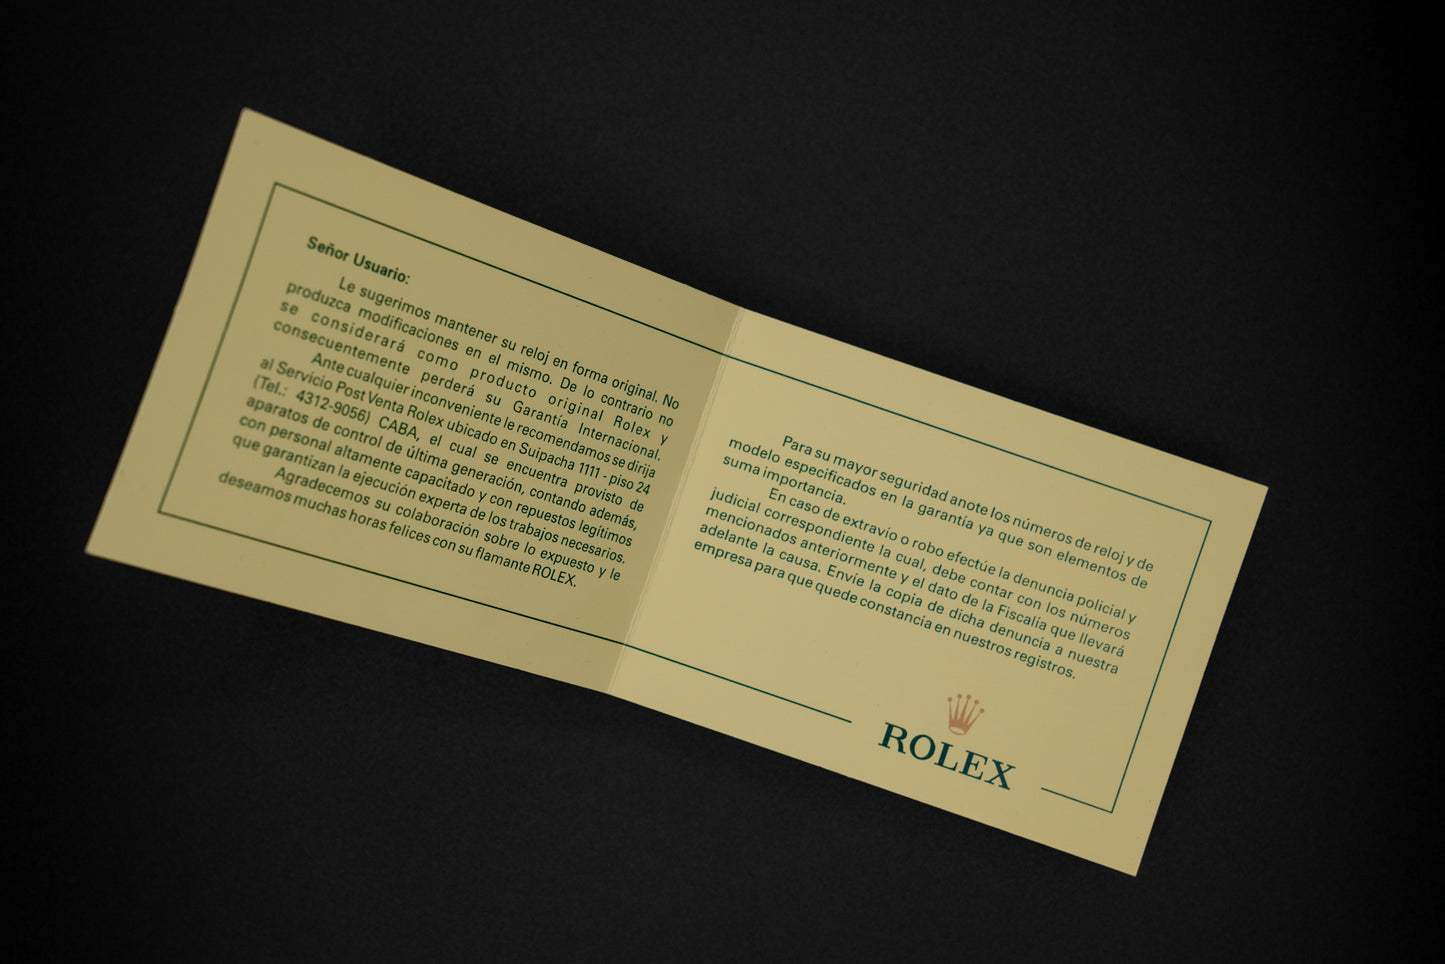 Rolex "Recomendaciones Importantes" Booklet Rolex Argentina S.A.